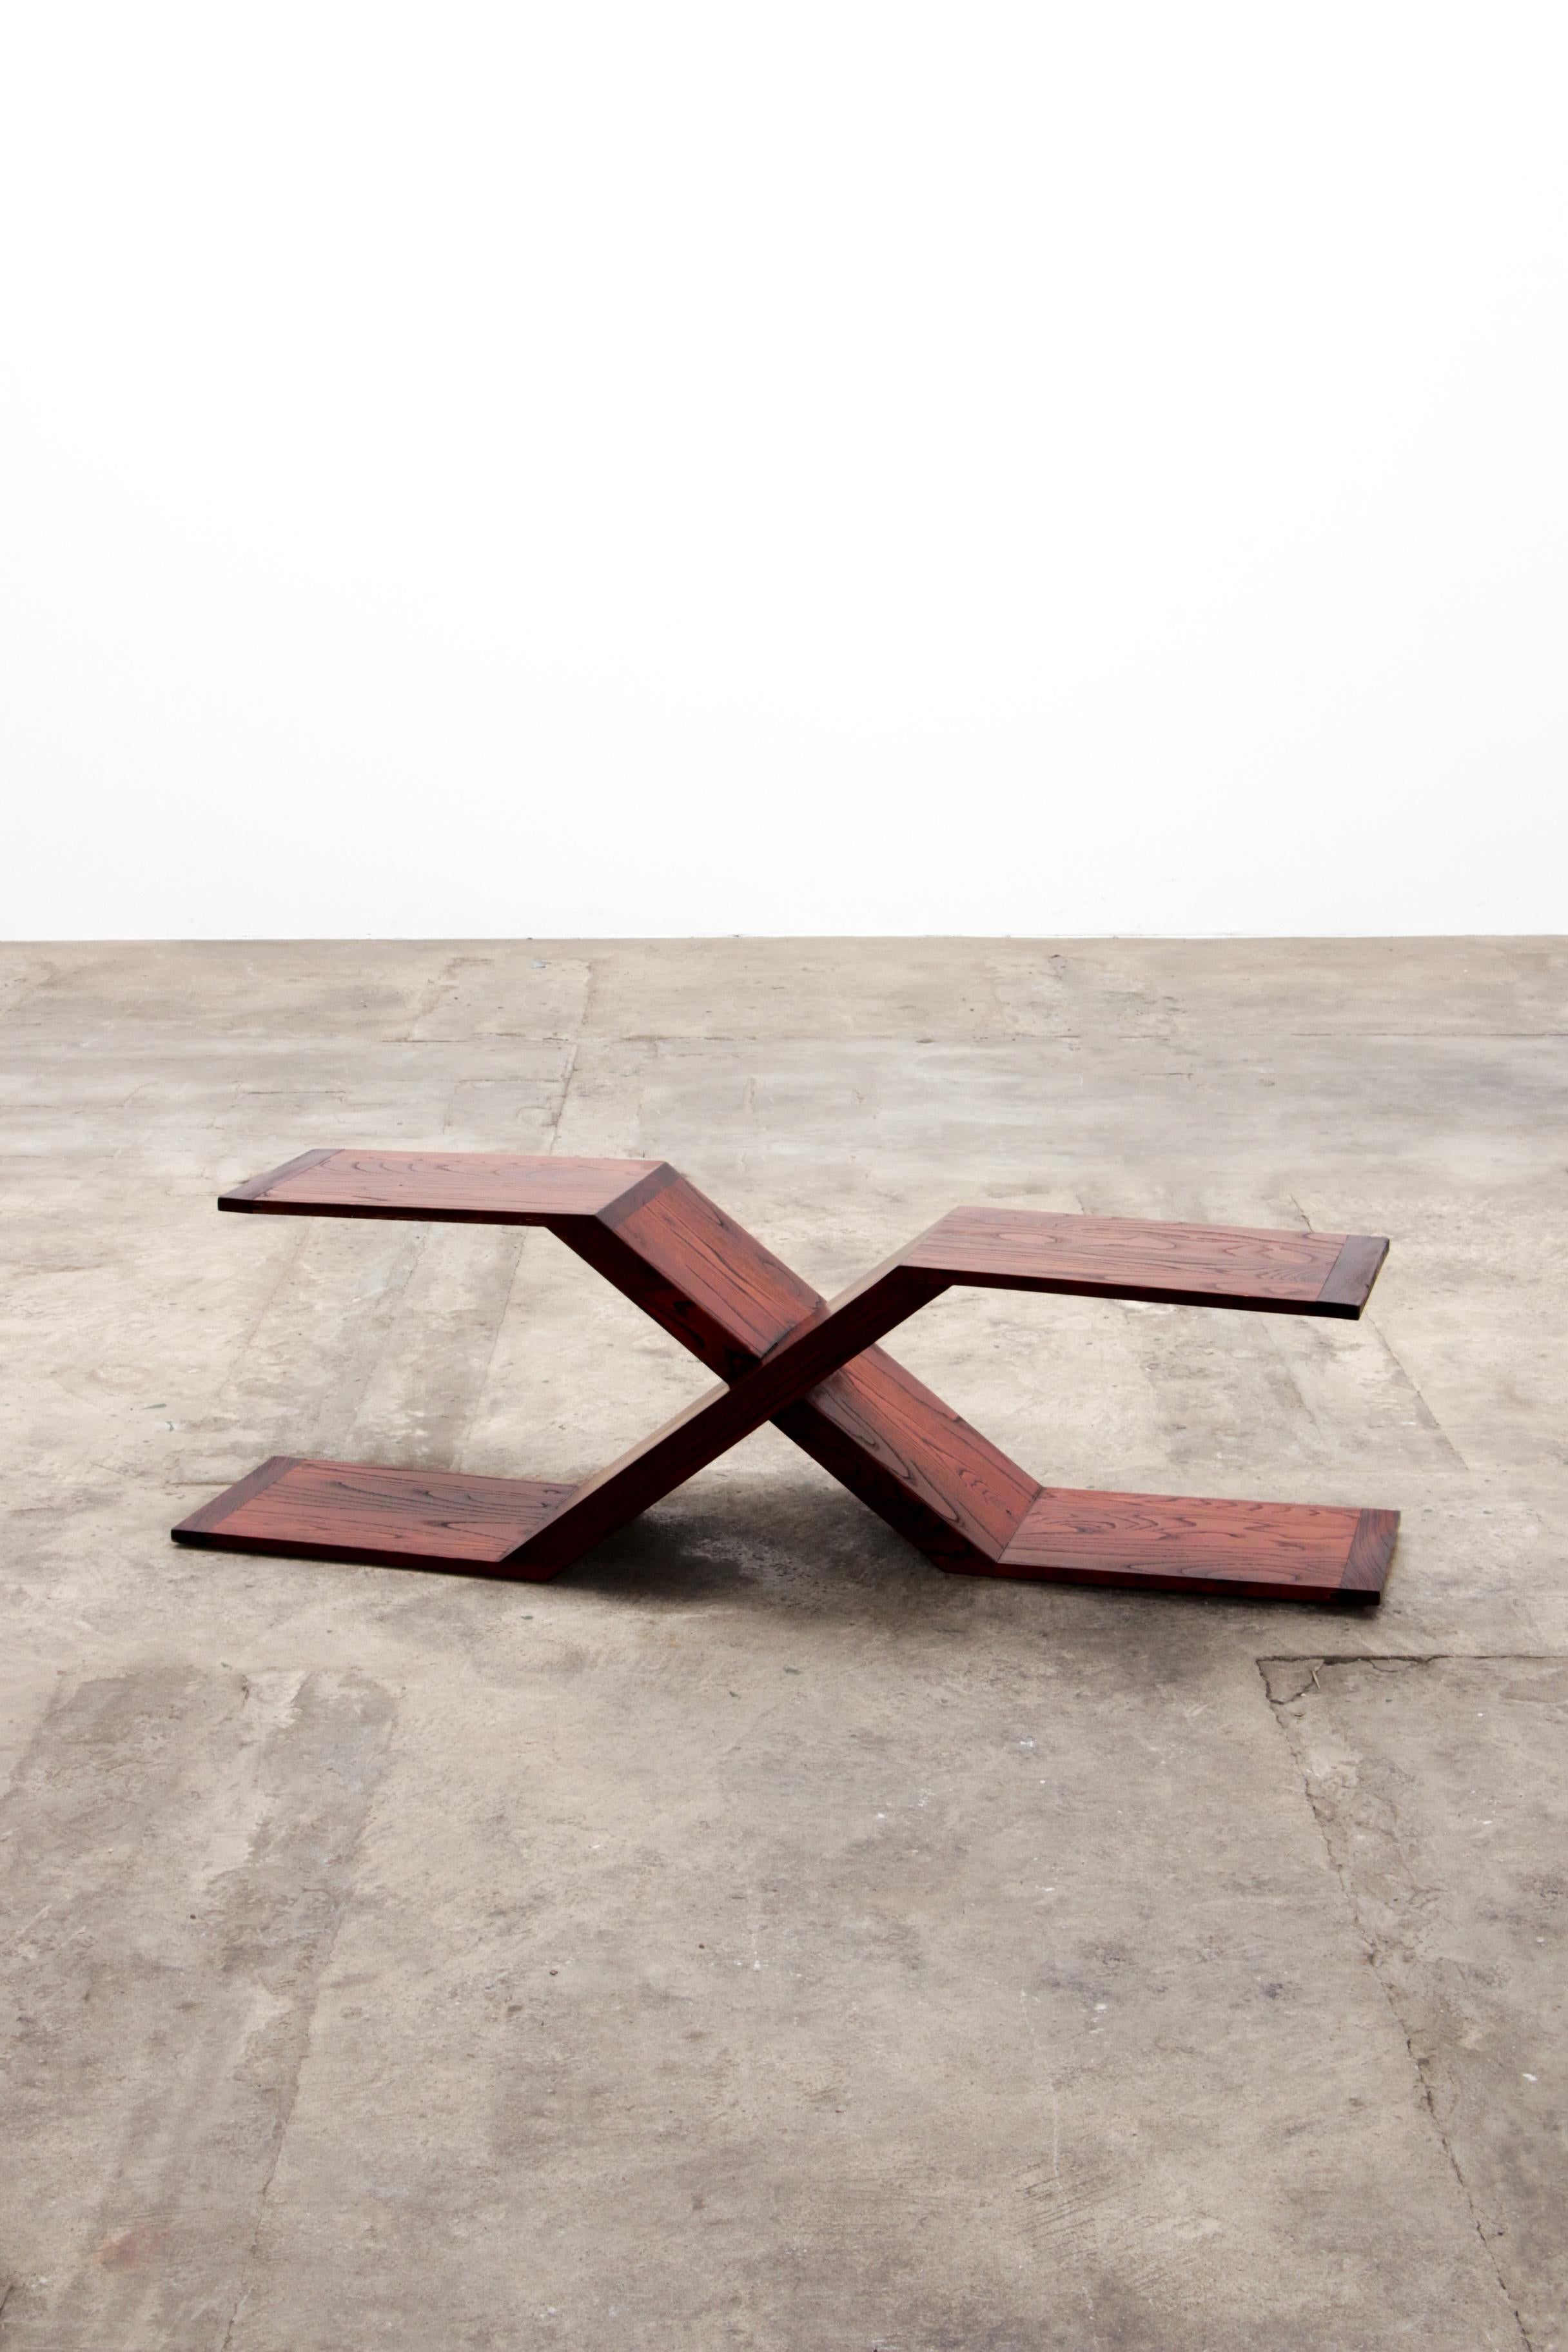 Table basse asymétrique Modèle X des années 1970, Italie

Il s'agit d'une table basse asymétrique, en bois marron. Modèle moderniste et minimaliste inspiré du modèle X.

Très agréable comme table basse ou table d'appoint, mais s'intègre également à